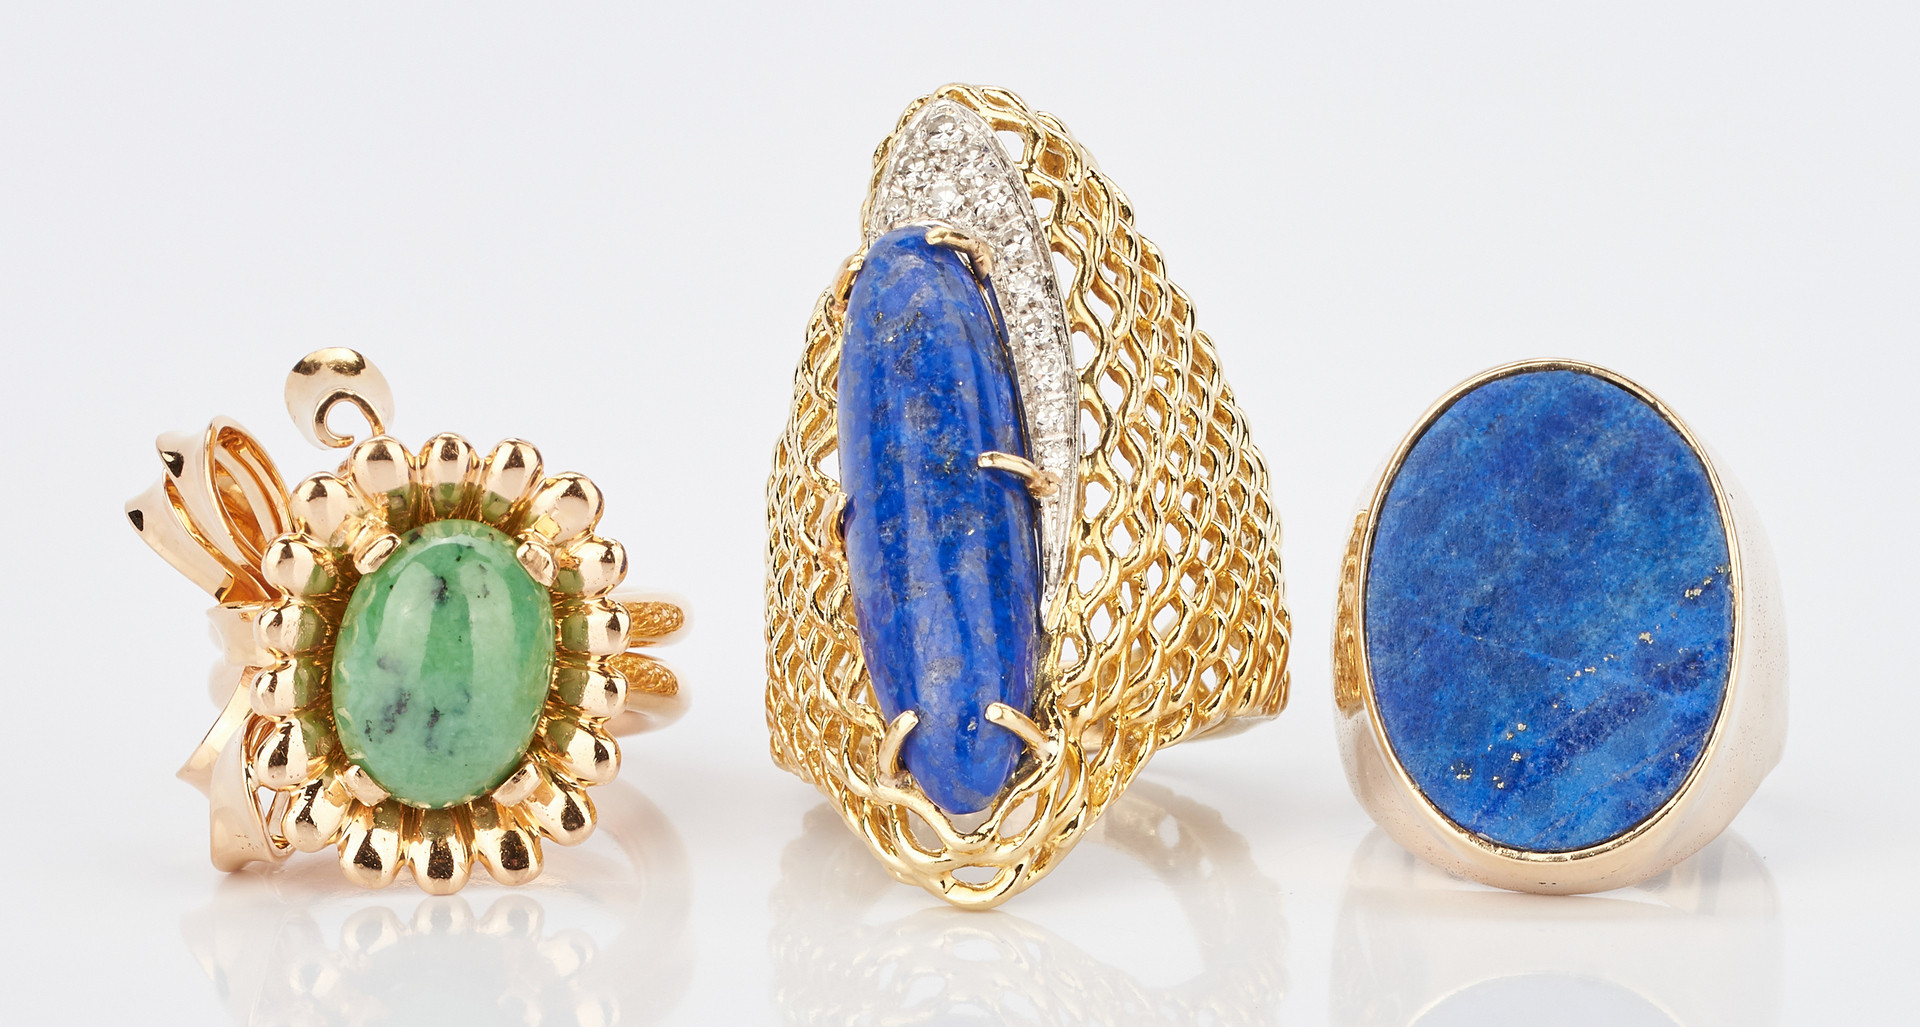 Lot 414: 3 Ladies Gold, Turquoise, & Lapis Lazuli Rings